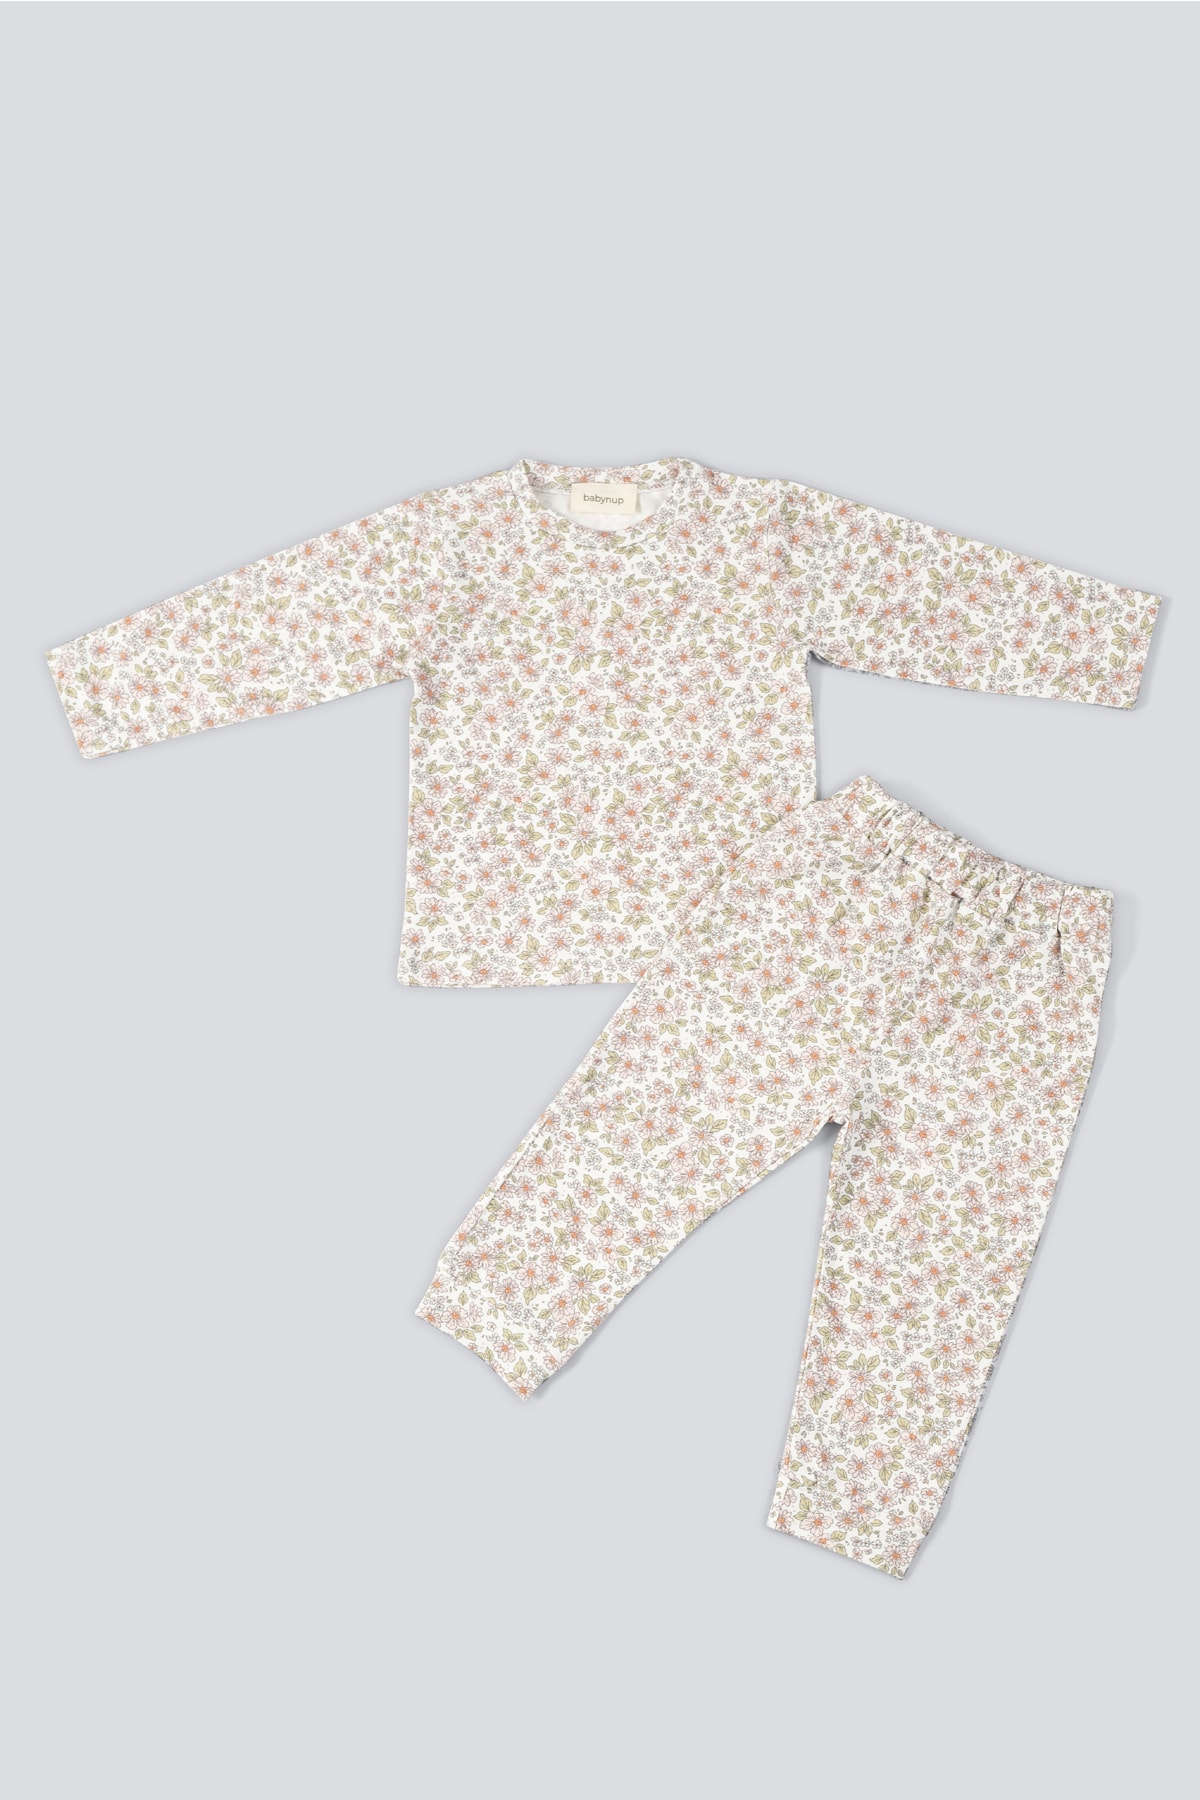 babynup Pembe Minimal Çiçek Desenli Lüks Soft Bebek Pijama Takımı